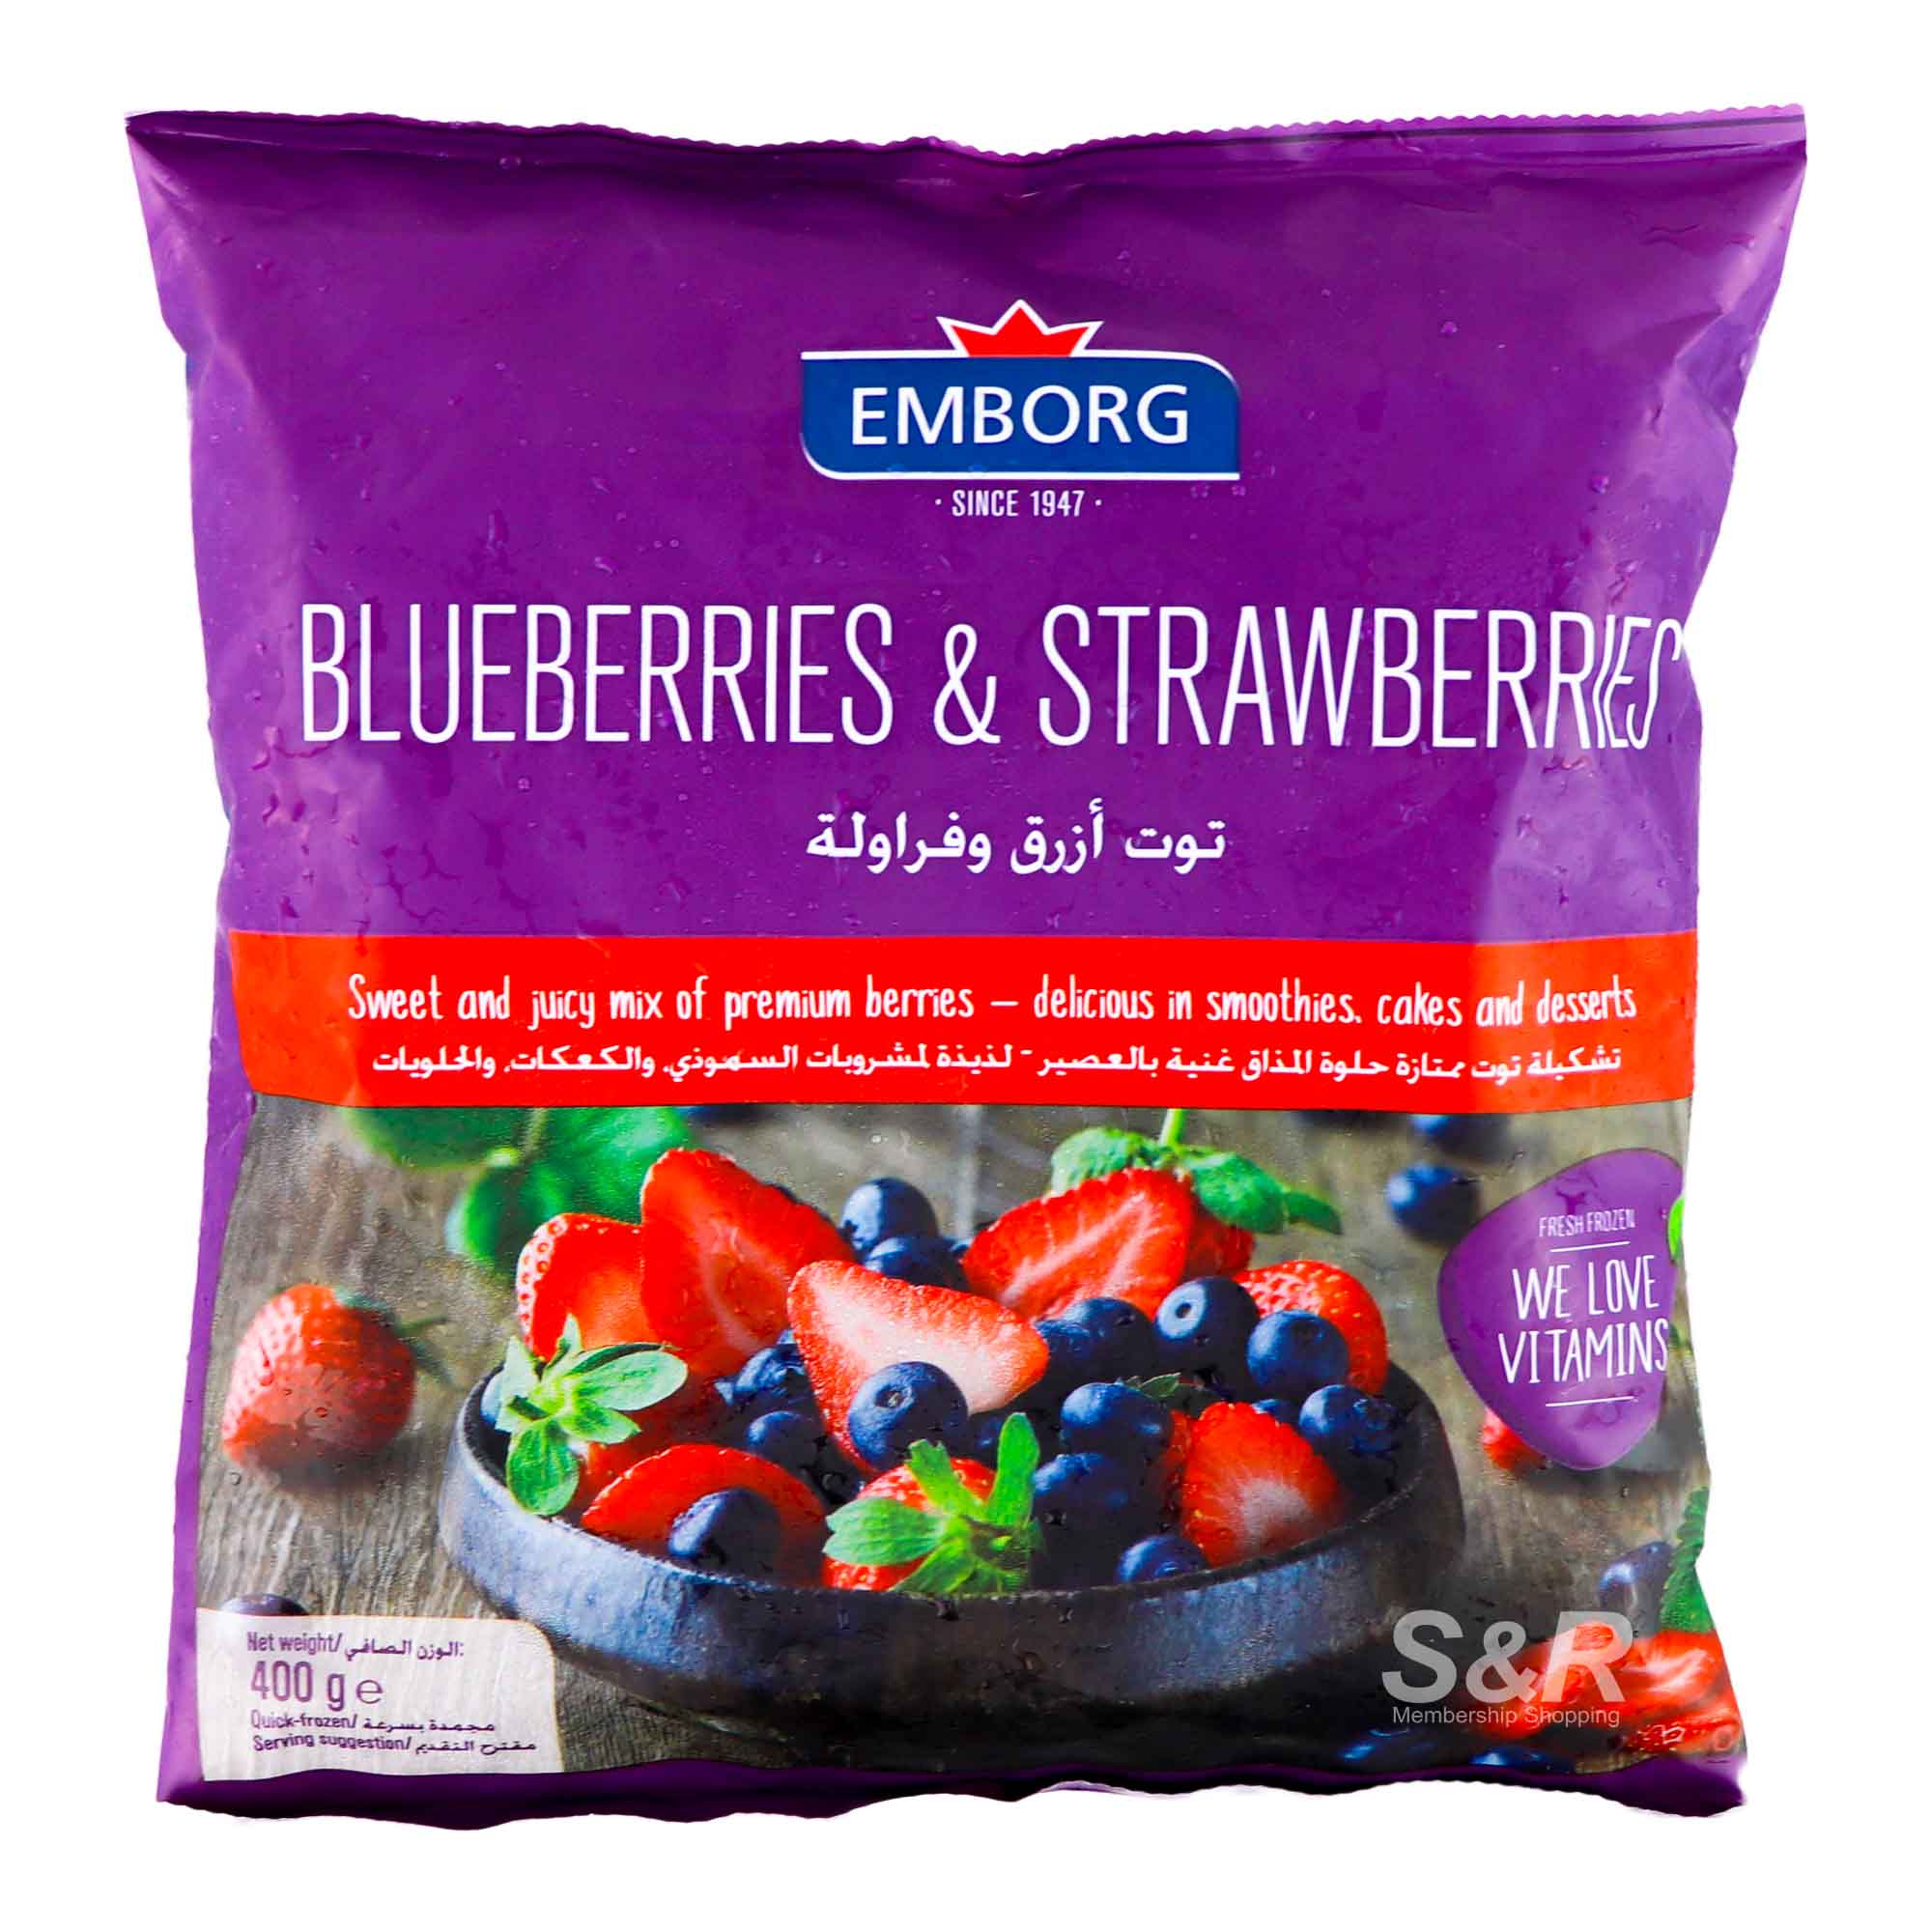 Emborg Frozen Blueberries & Strawberries 400g